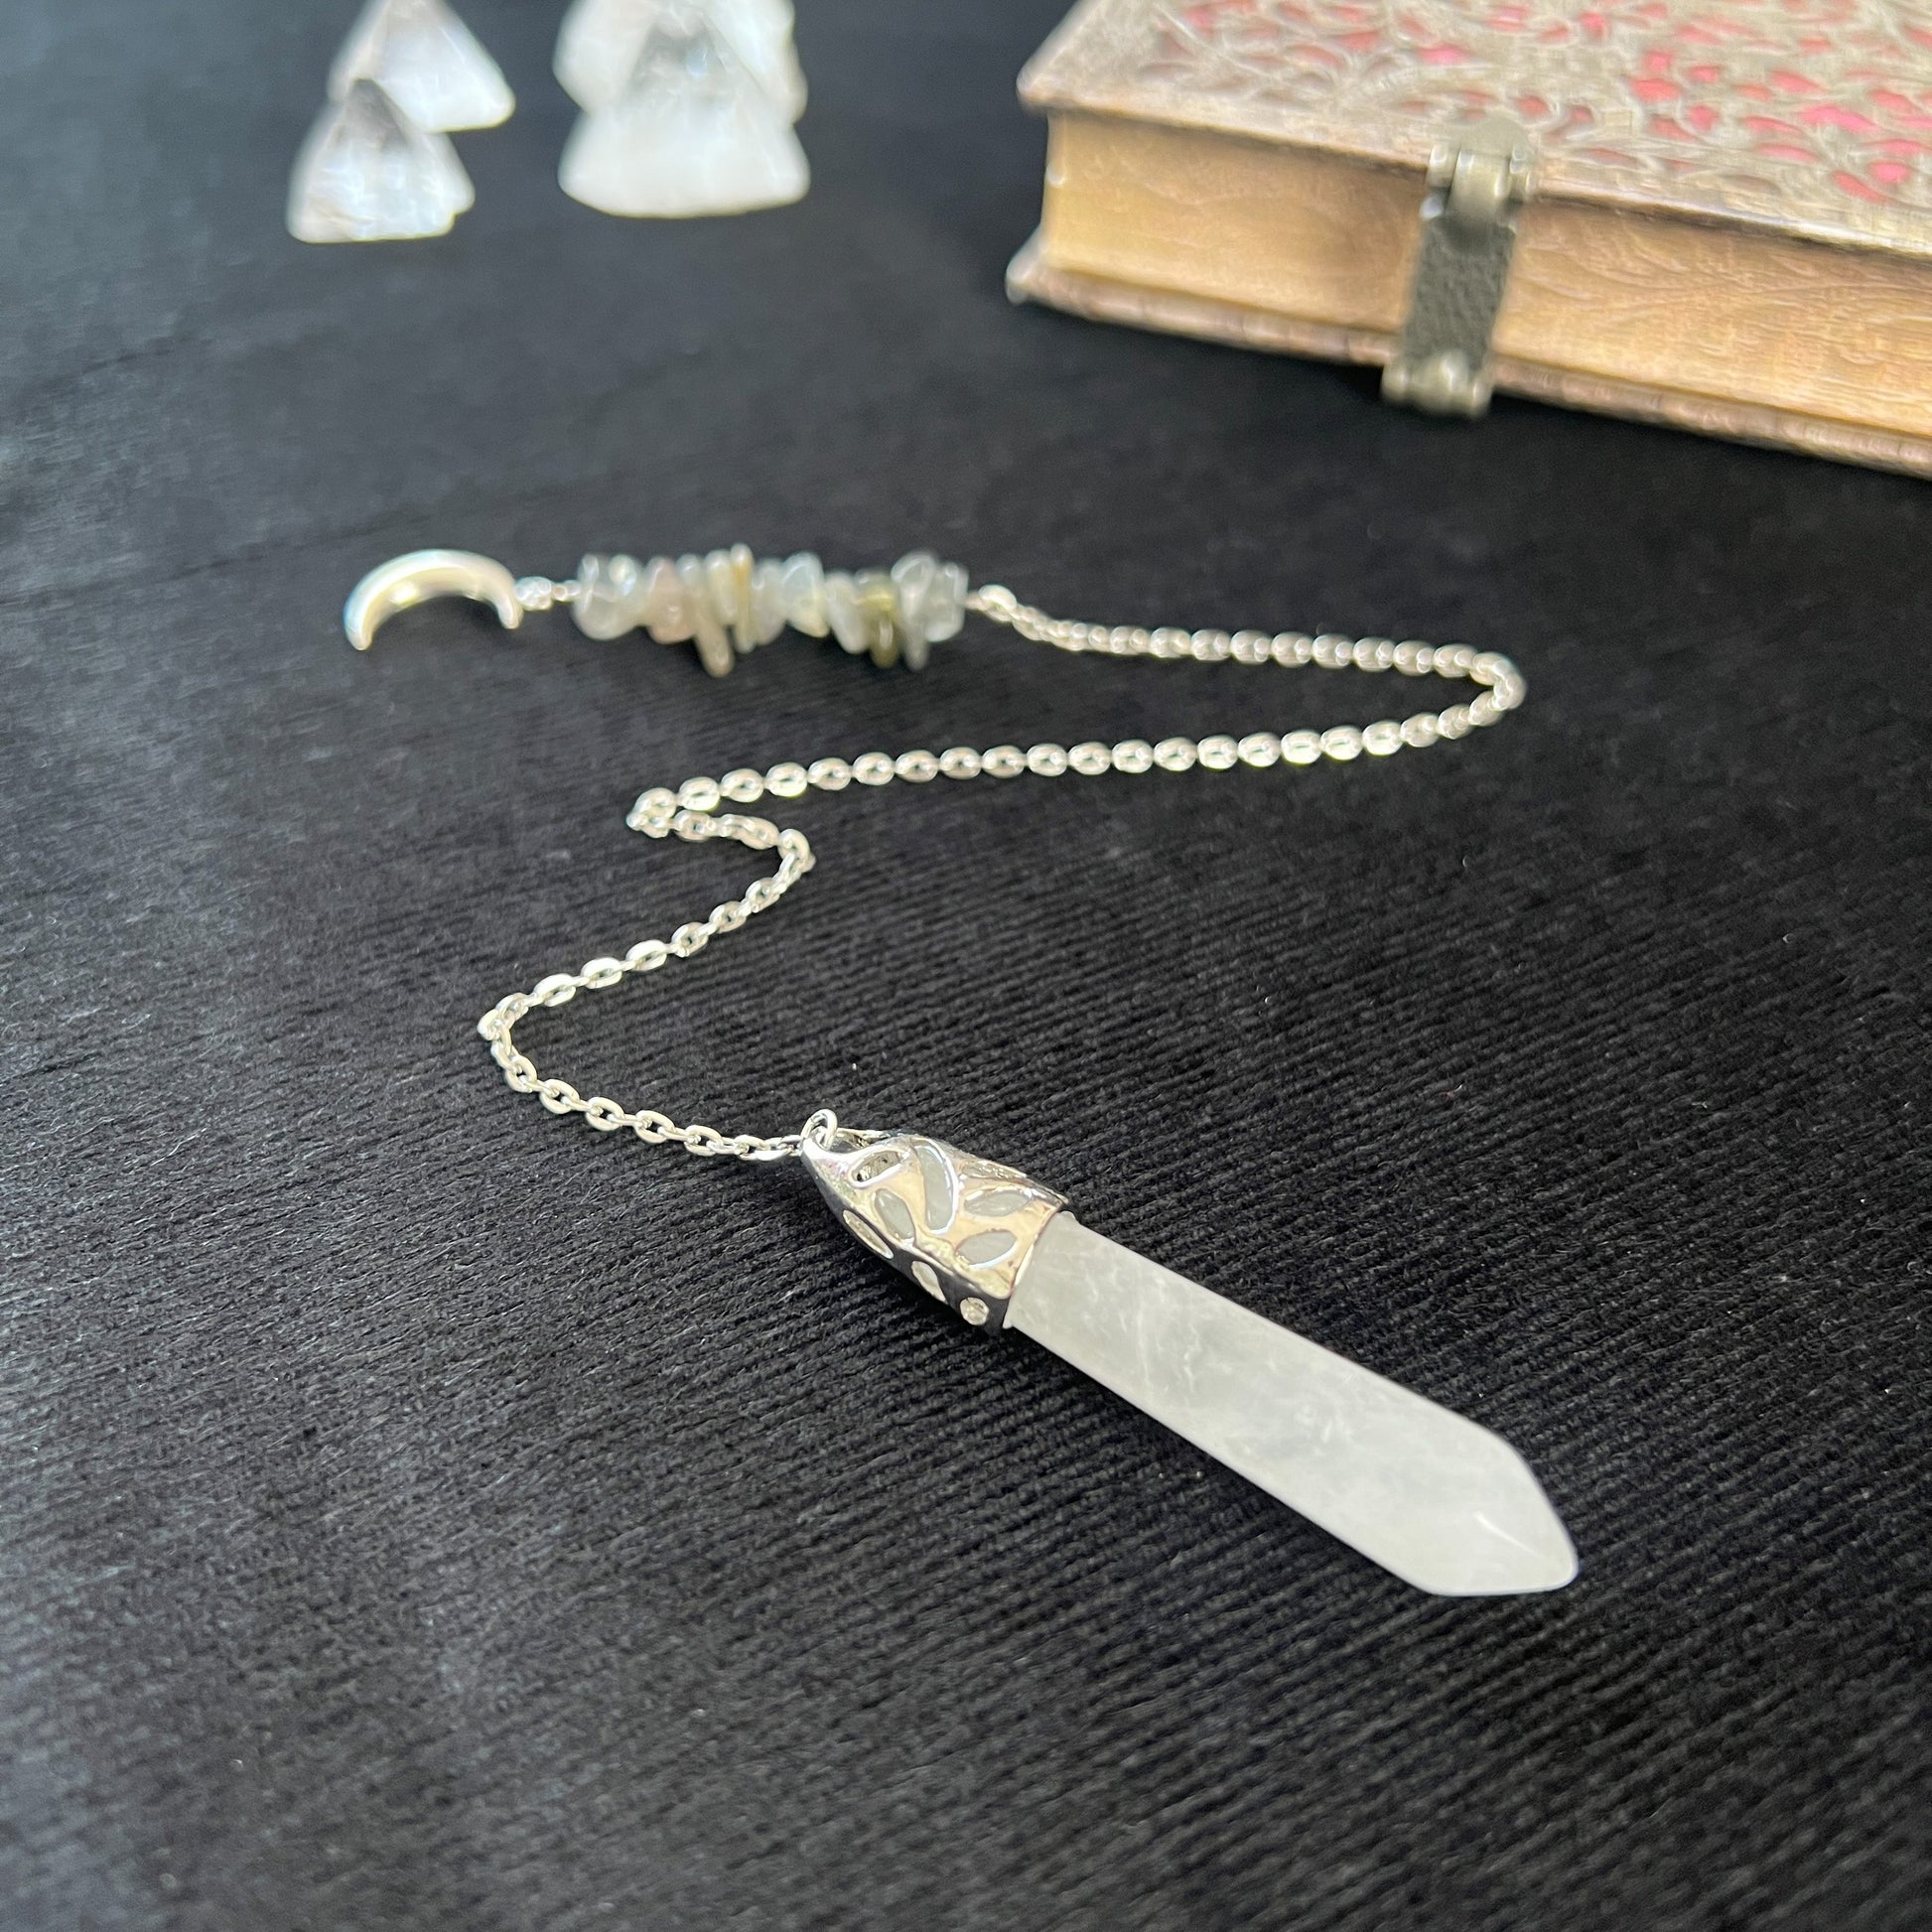 Gemstone pendulum quartz and labradorite Moon crescent dowsing divination tool for witchcraft fortune telling